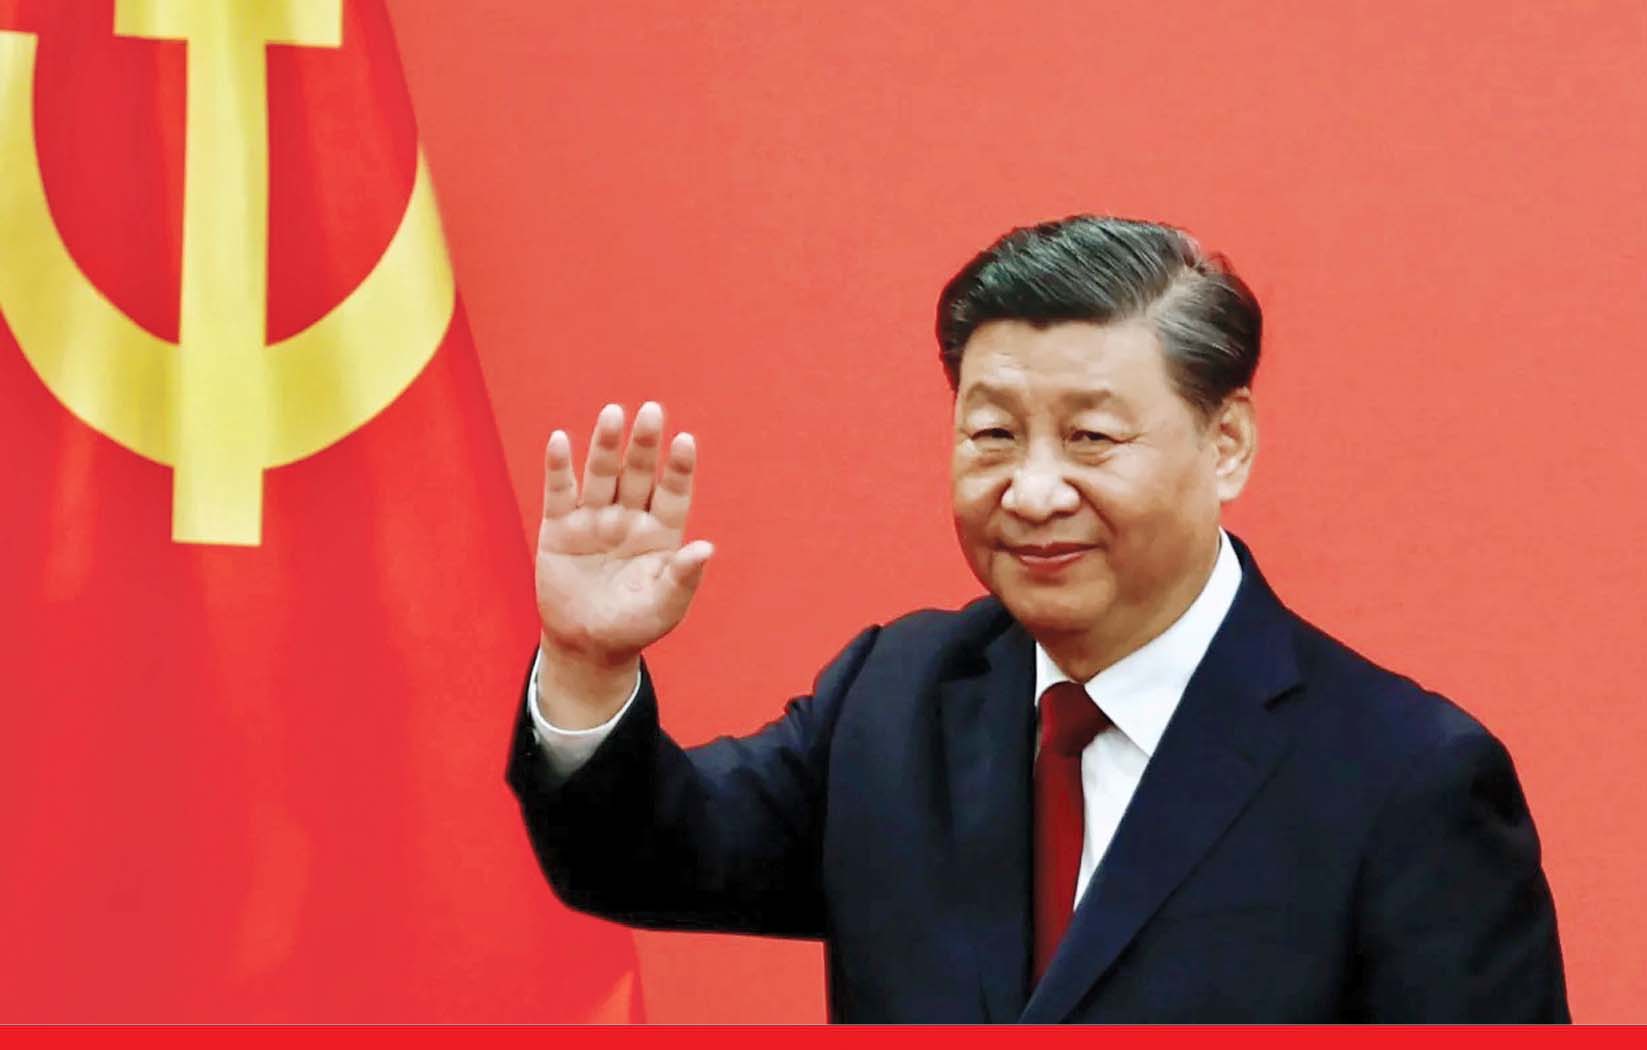 तीसरी बार चीन के राष्‍ट्रपति बने जिनपिंग, सबसे ज्‍यादा समय तक राज करने वाले पहले चीनी नेता